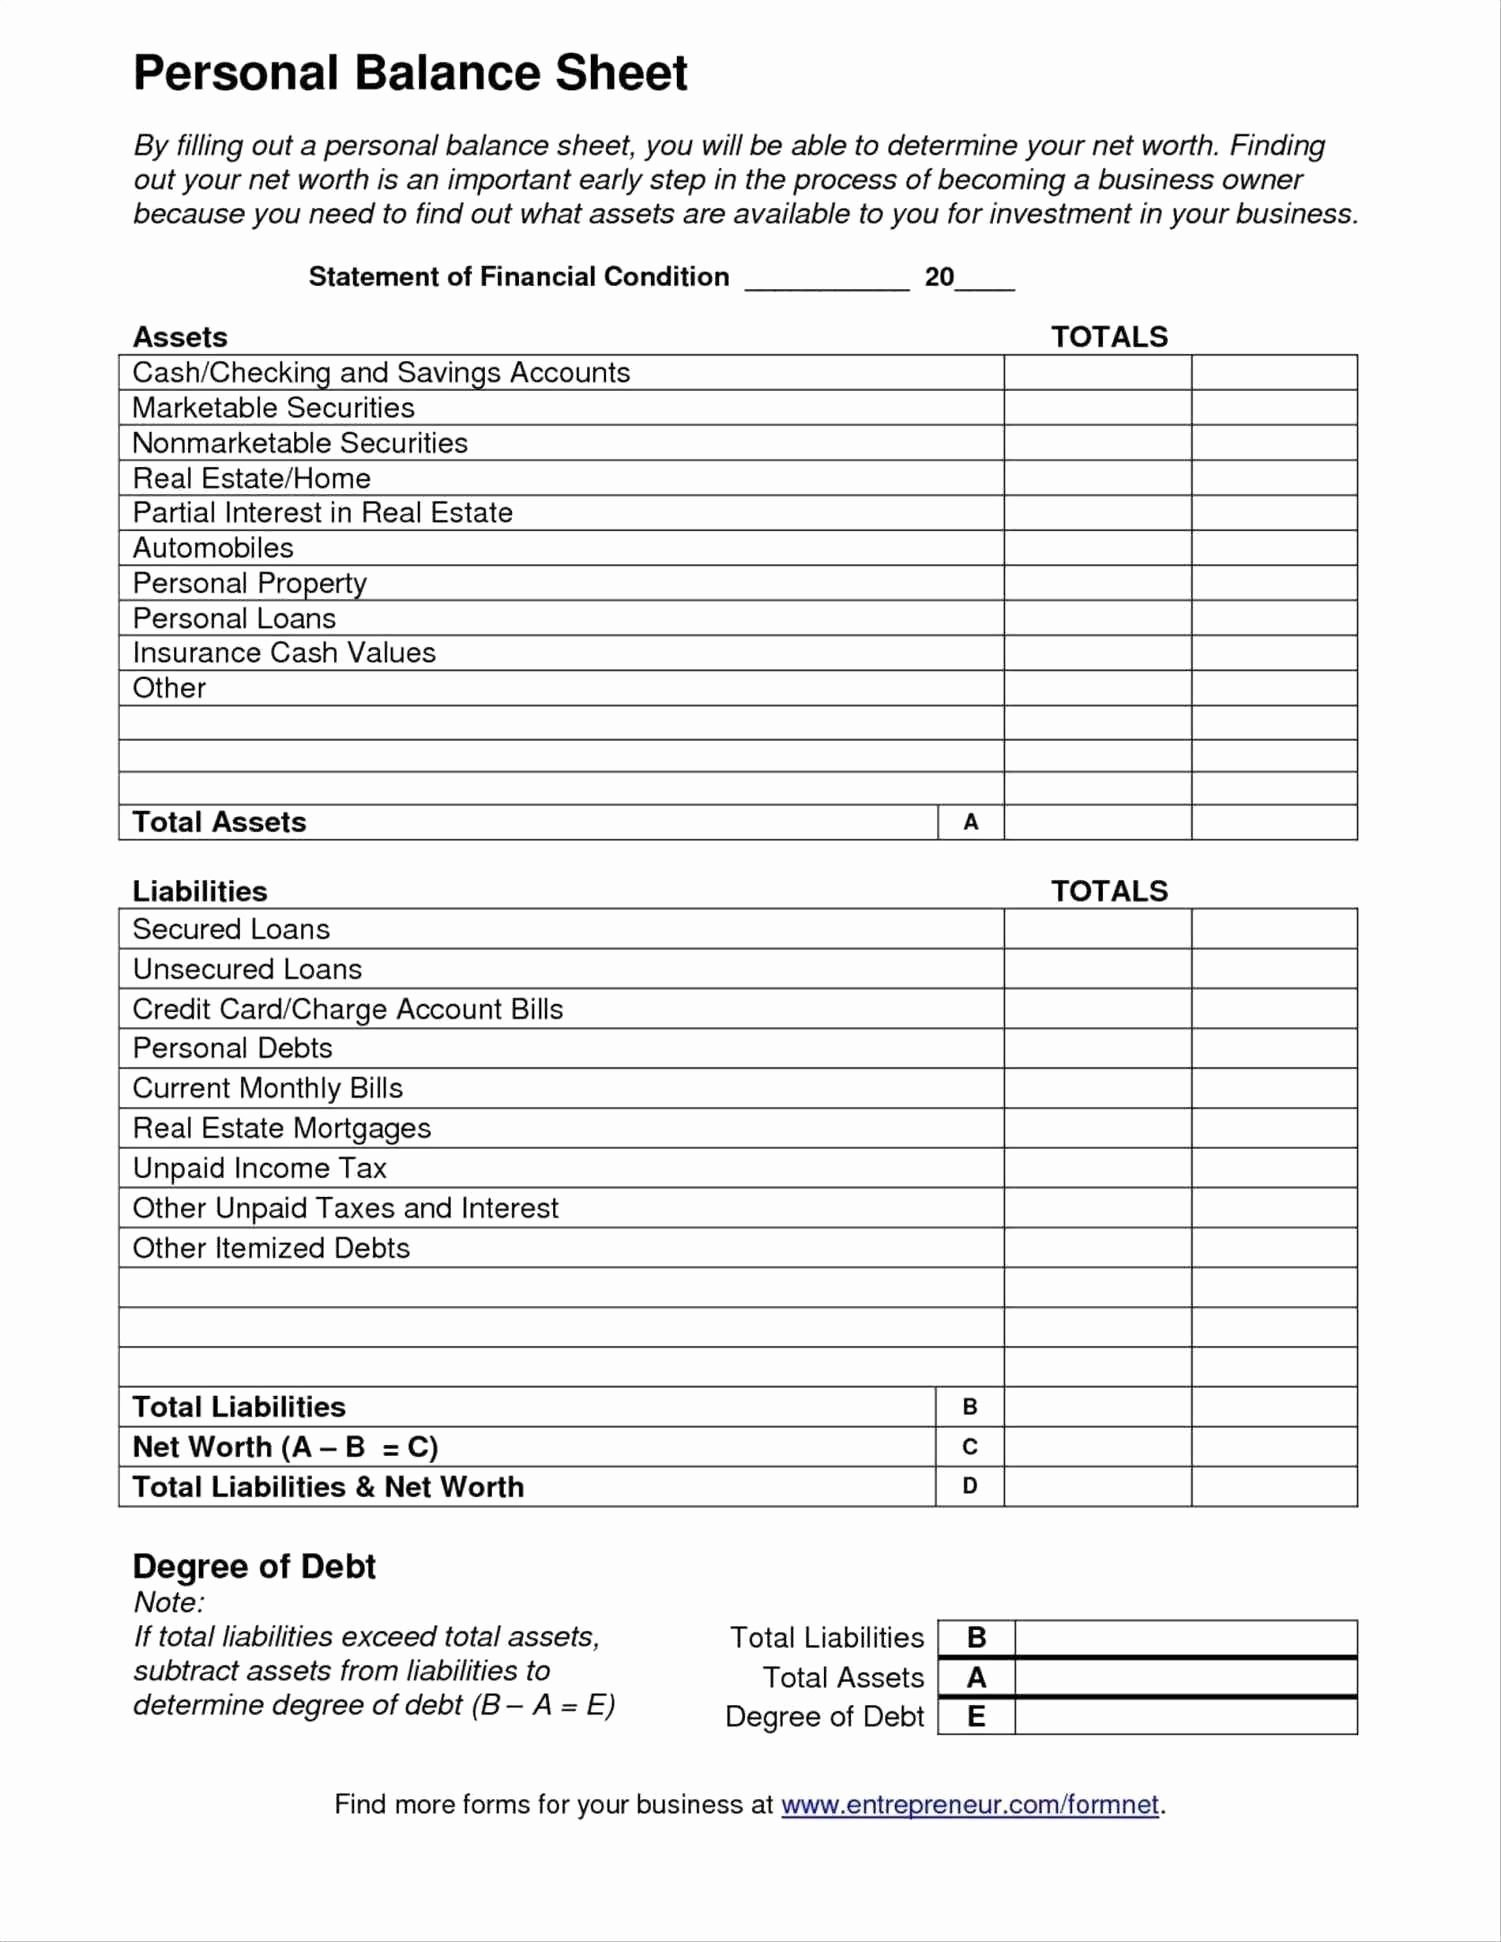 Student Loan Interest Deduction Worksheet 2016  Briefencounters With Student Loan Interest Deduction Worksheet